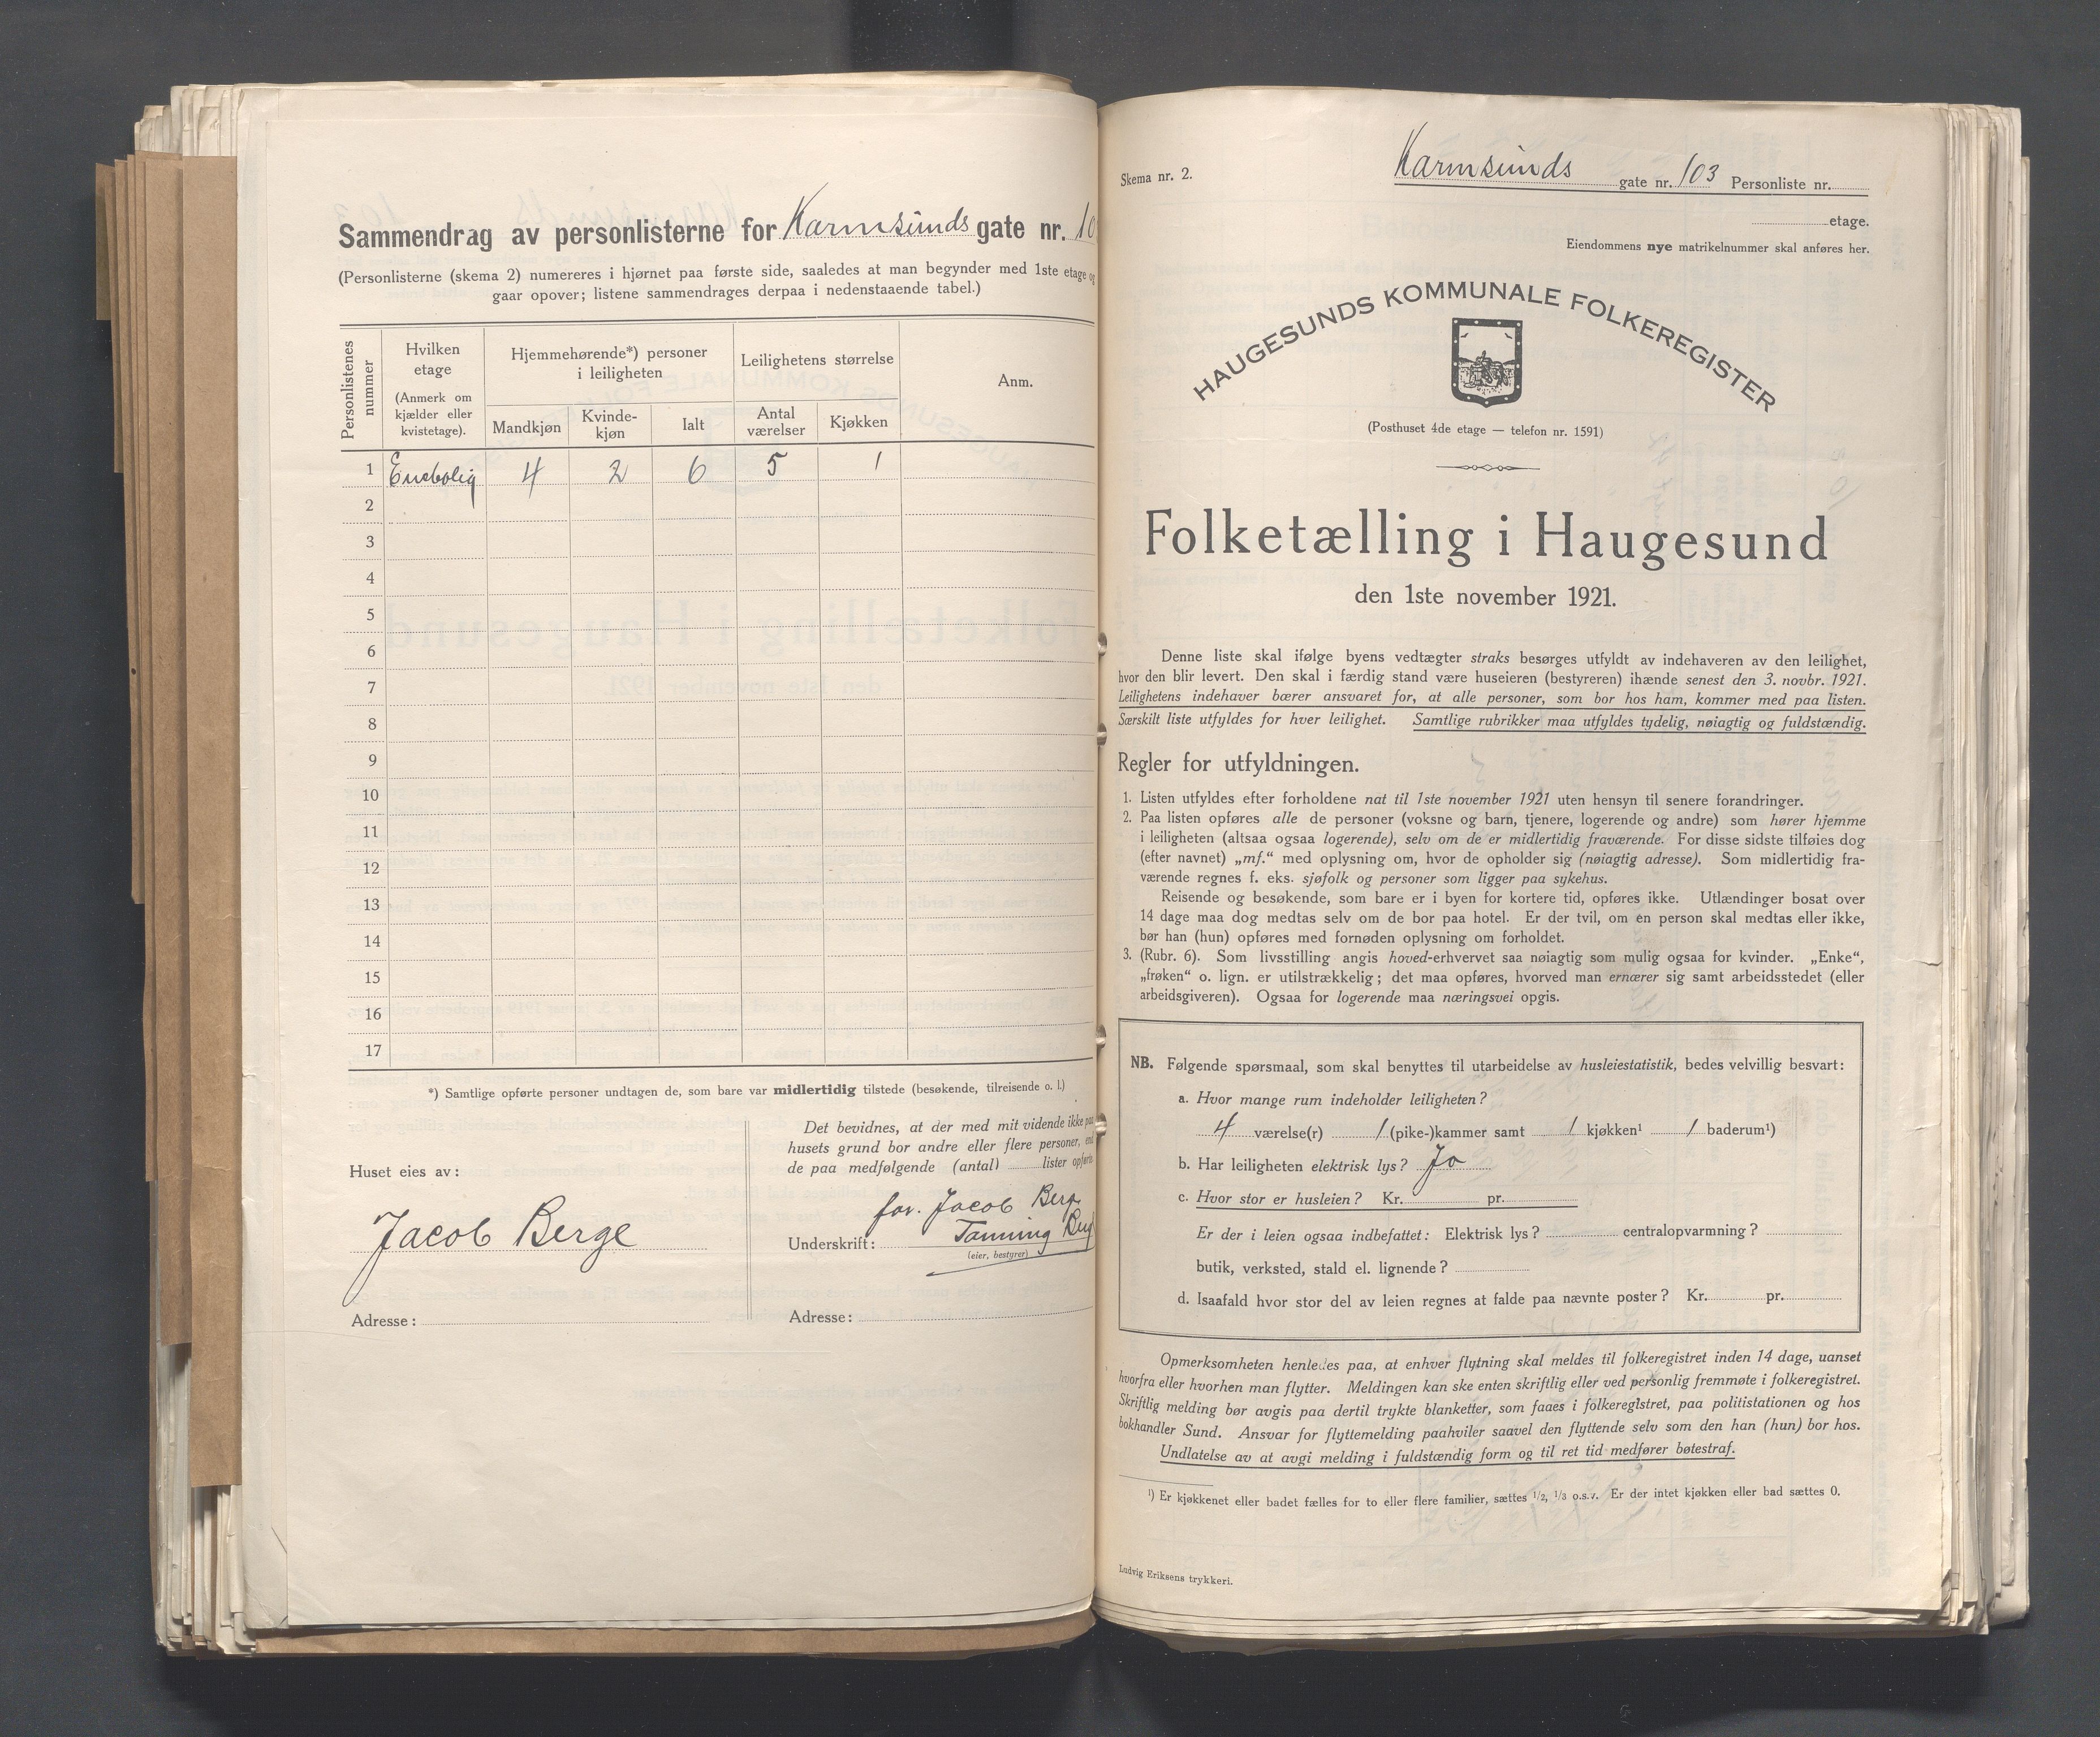 IKAR, Local census 1.11.1921 for Haugesund, 1921, p. 2451